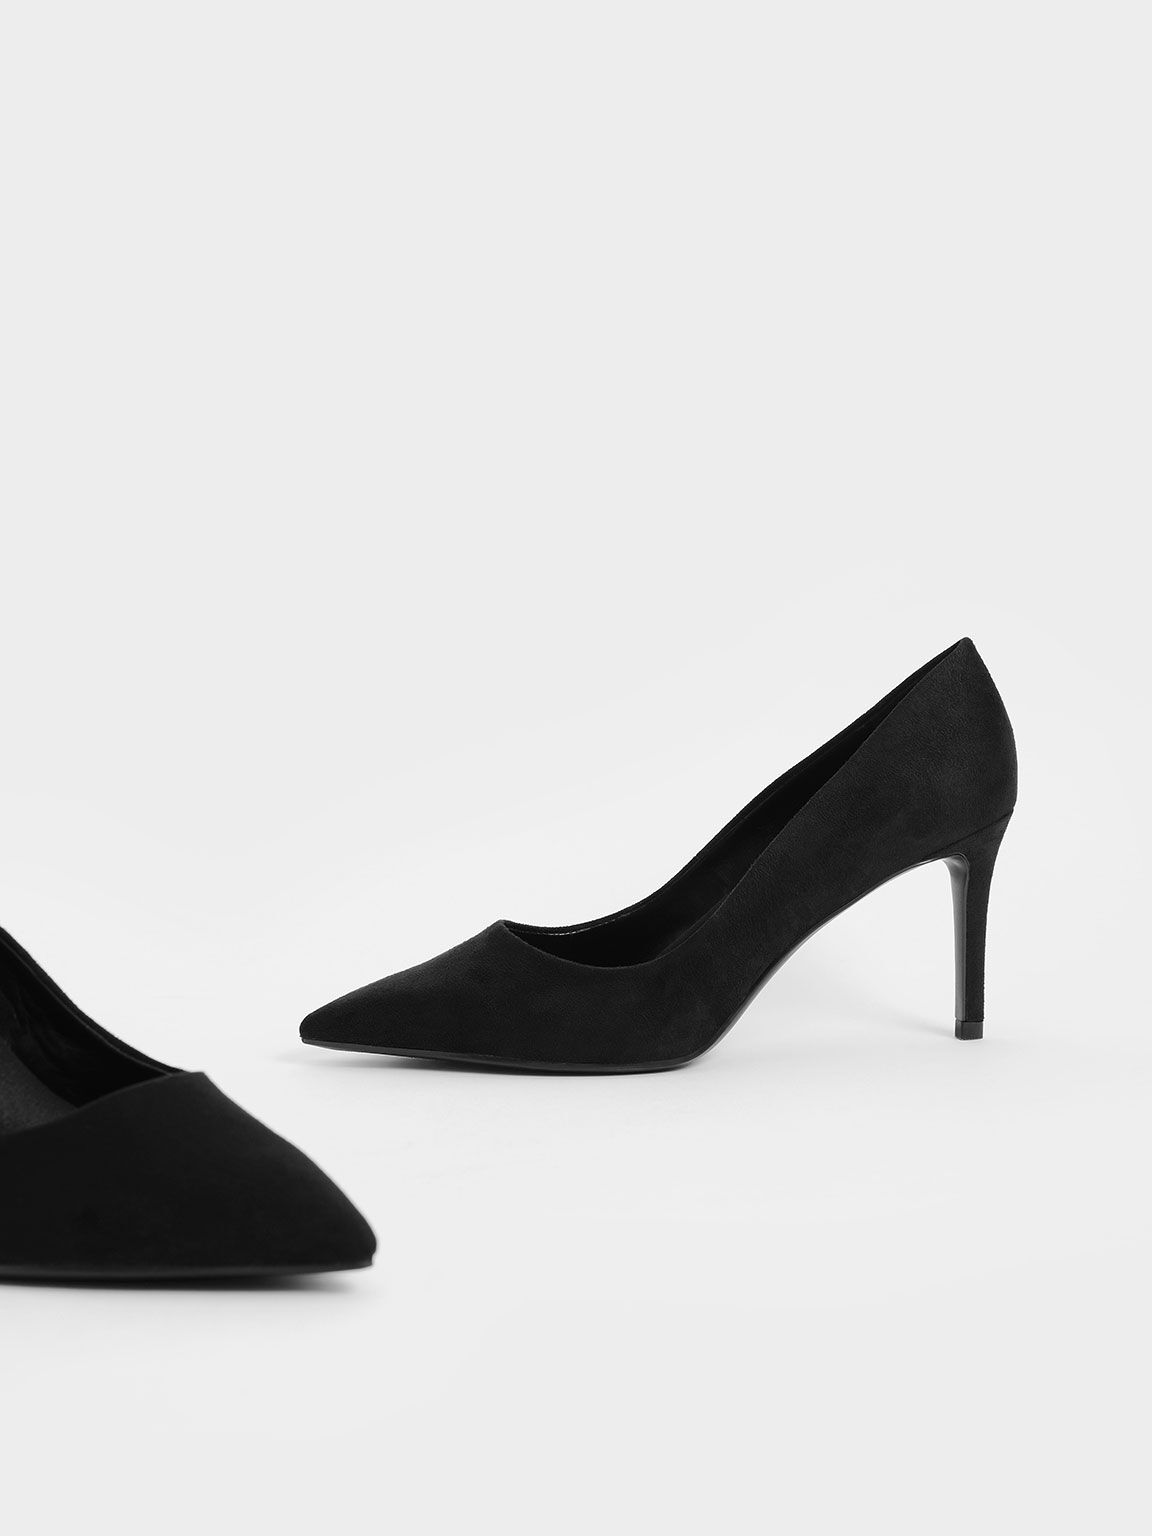 Sepatu Textured Pointed Toe Stiletto Pumps, Black Textured, hi-res